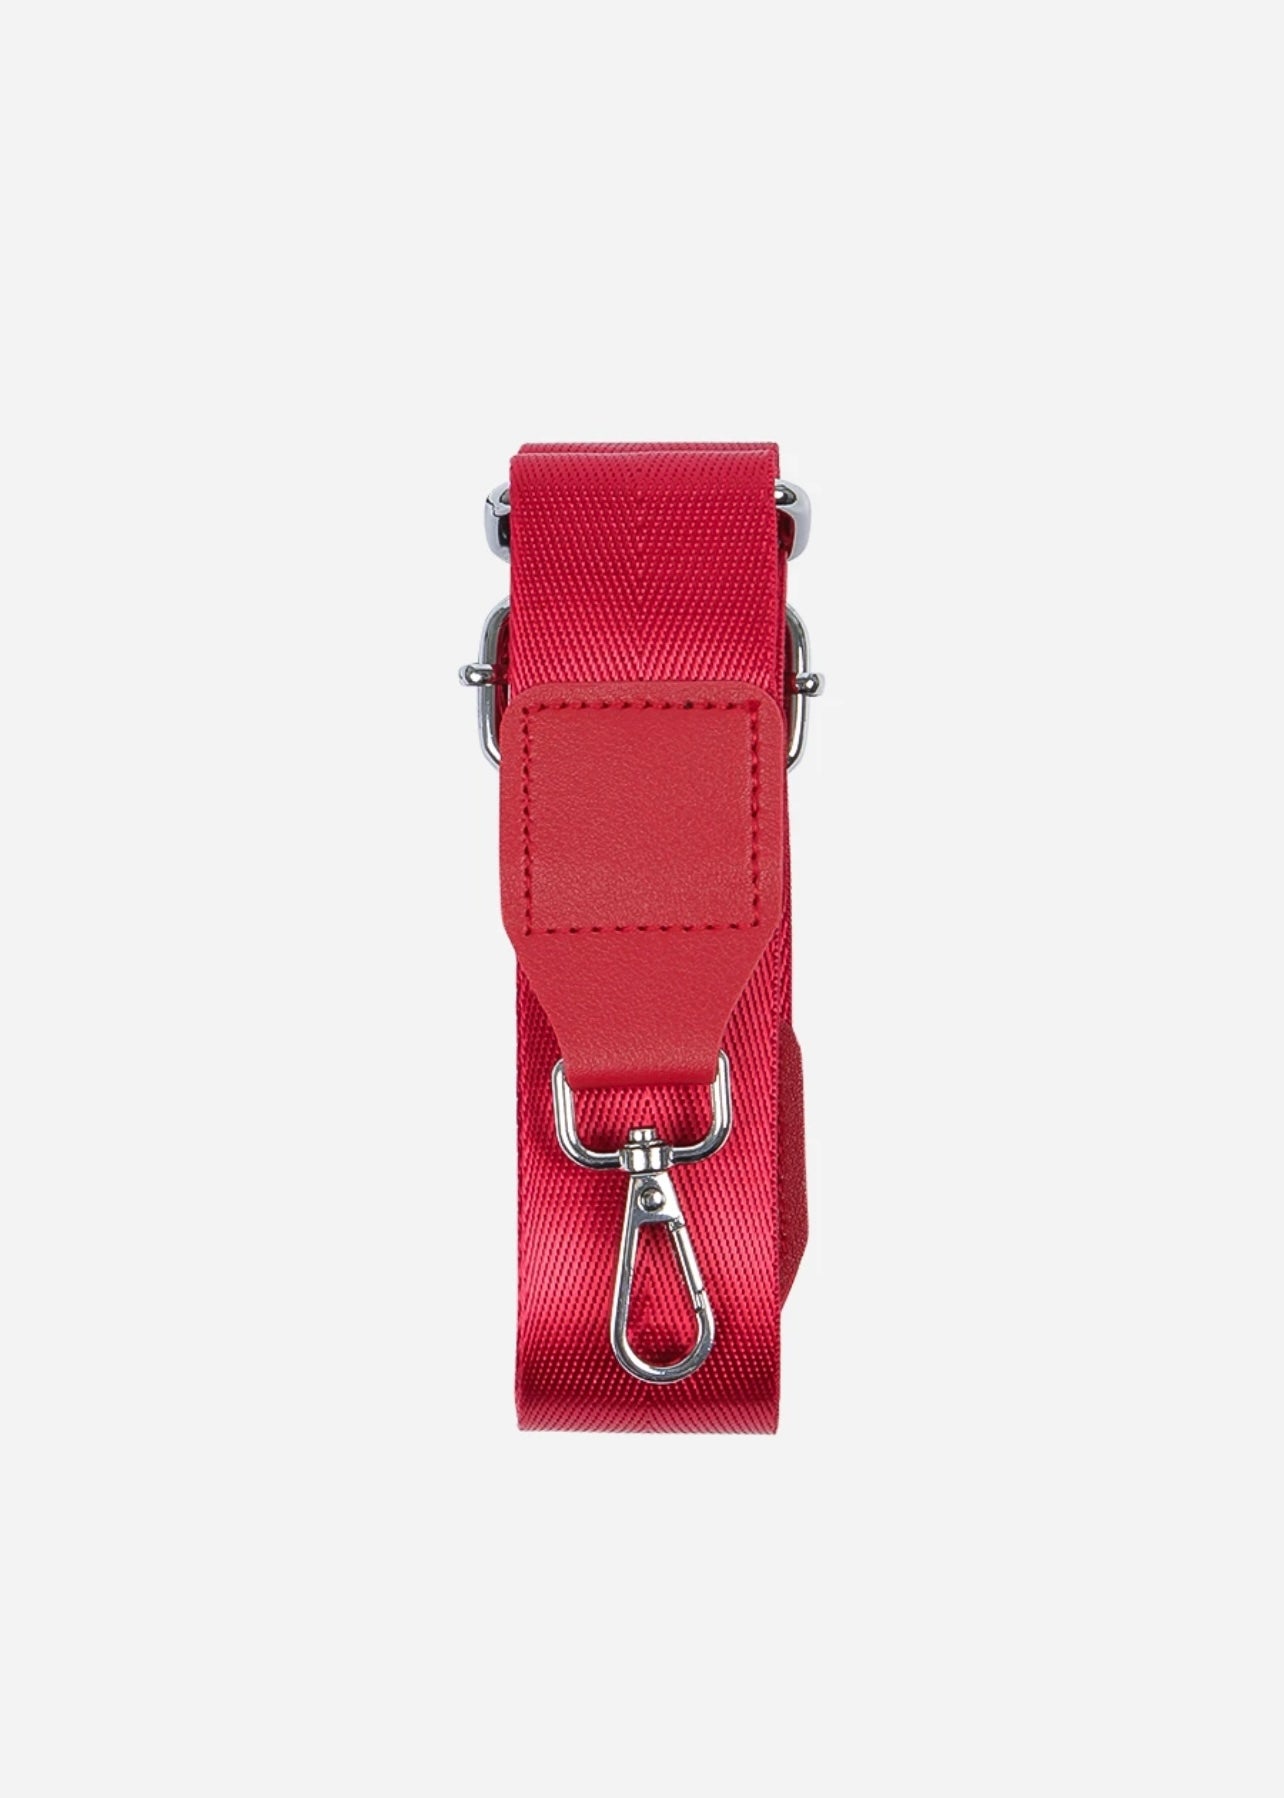 Sands Red Handbag Strap*